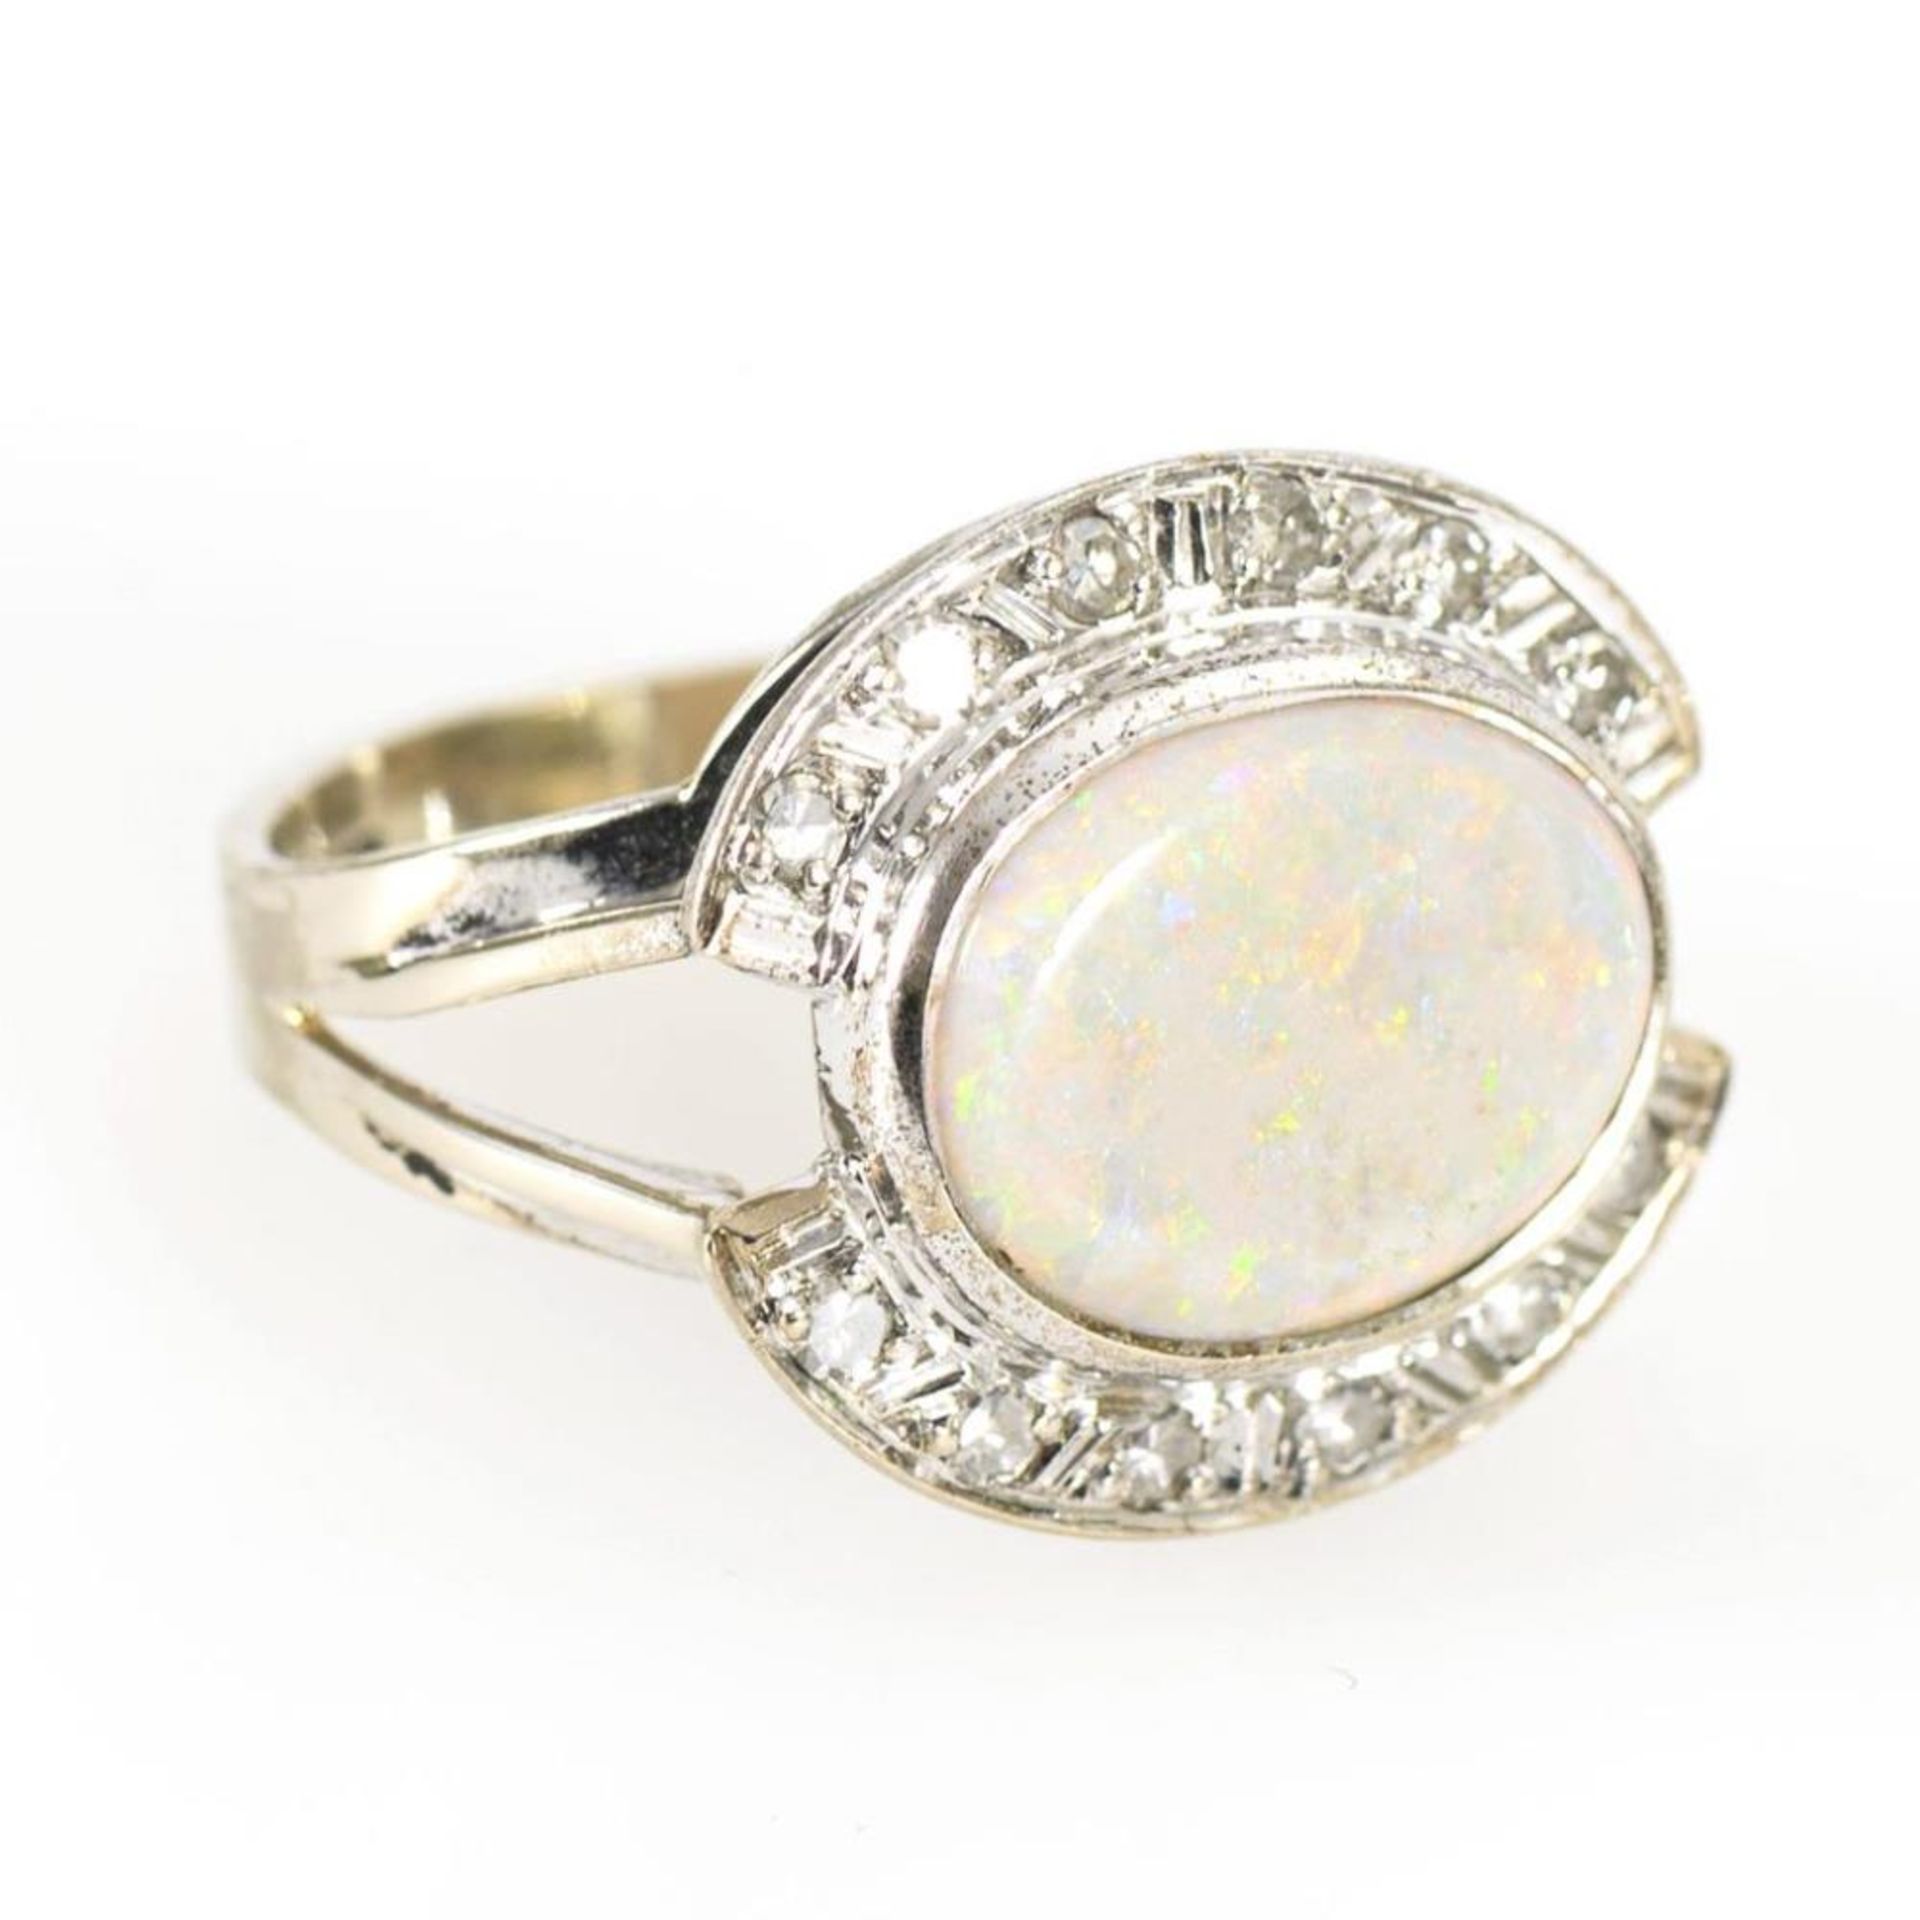 Ring mit Opal und Brillanten. - Image 2 of 3